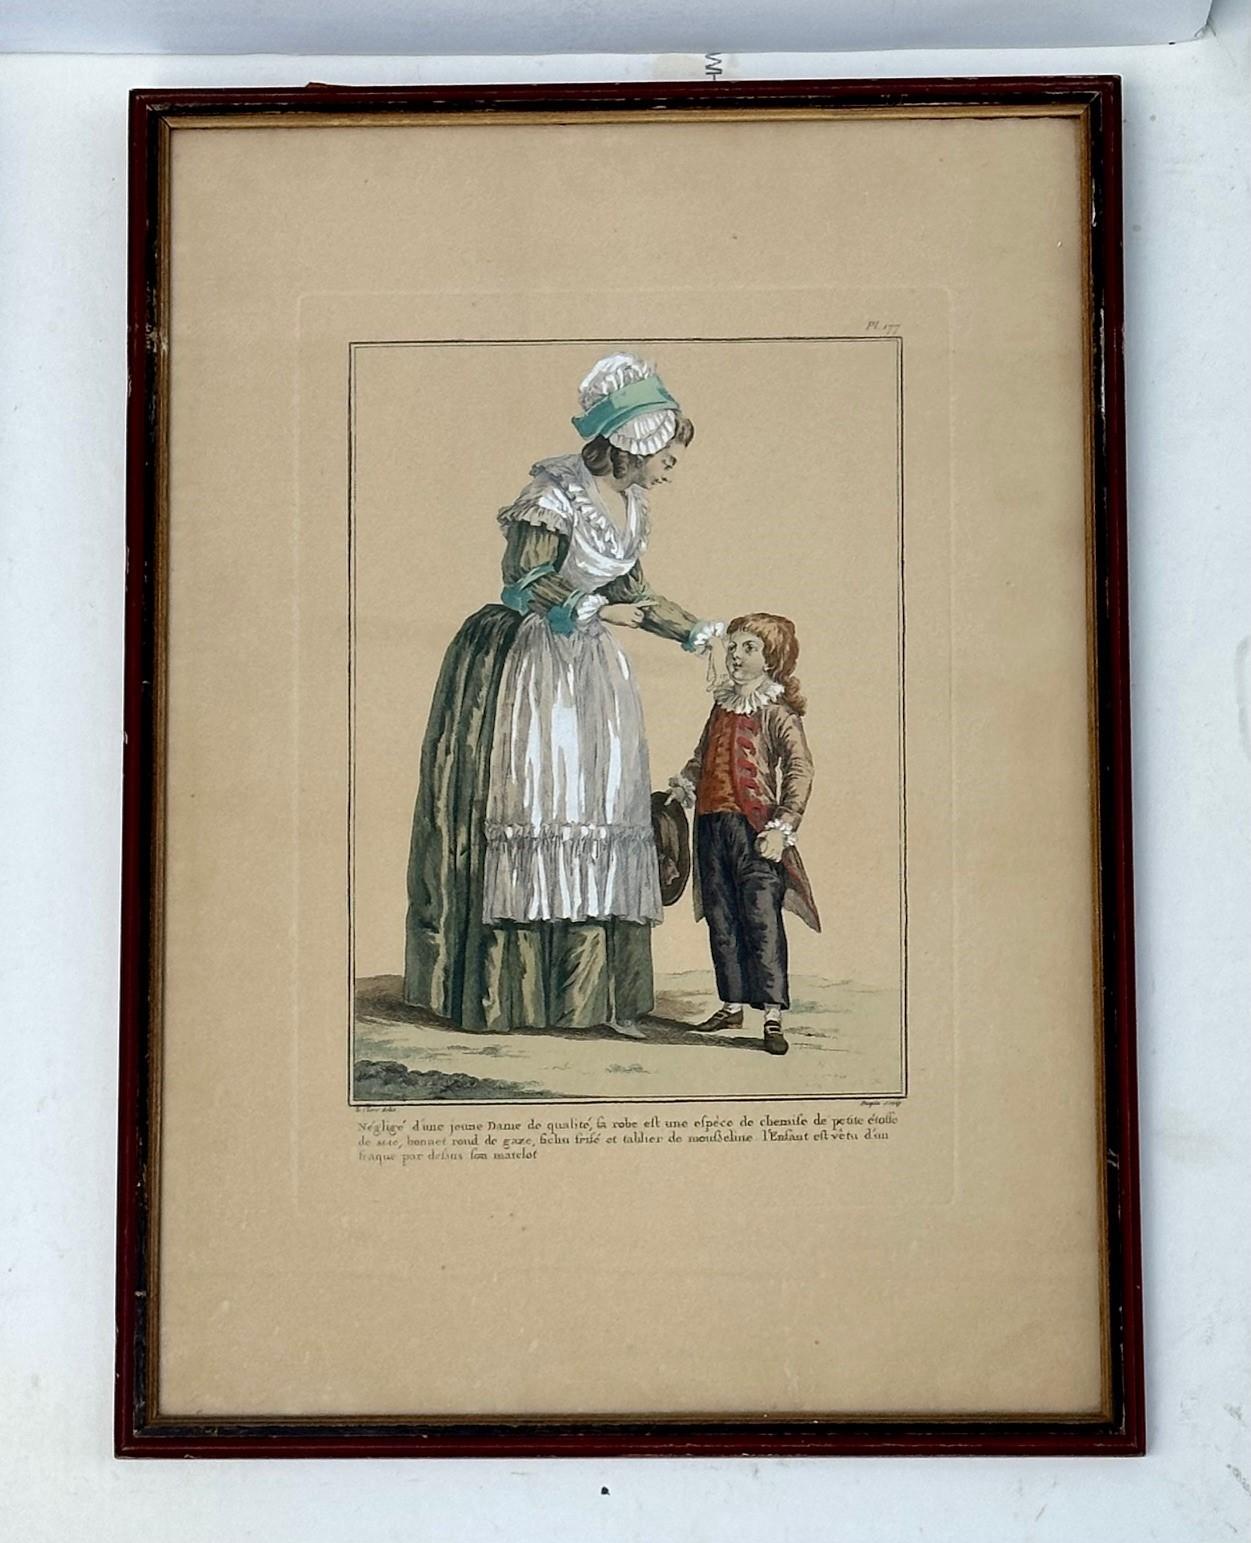 Französische handkolorierte Galerie des Modes Kostüme Francais mit Gravur, Francais, 1779

Seltener antiker französischer Modedruck, handkoloriert, zuerst in Paris 1779 veröffentlicht. Die Kompositionen orientierten sich an den modischsten